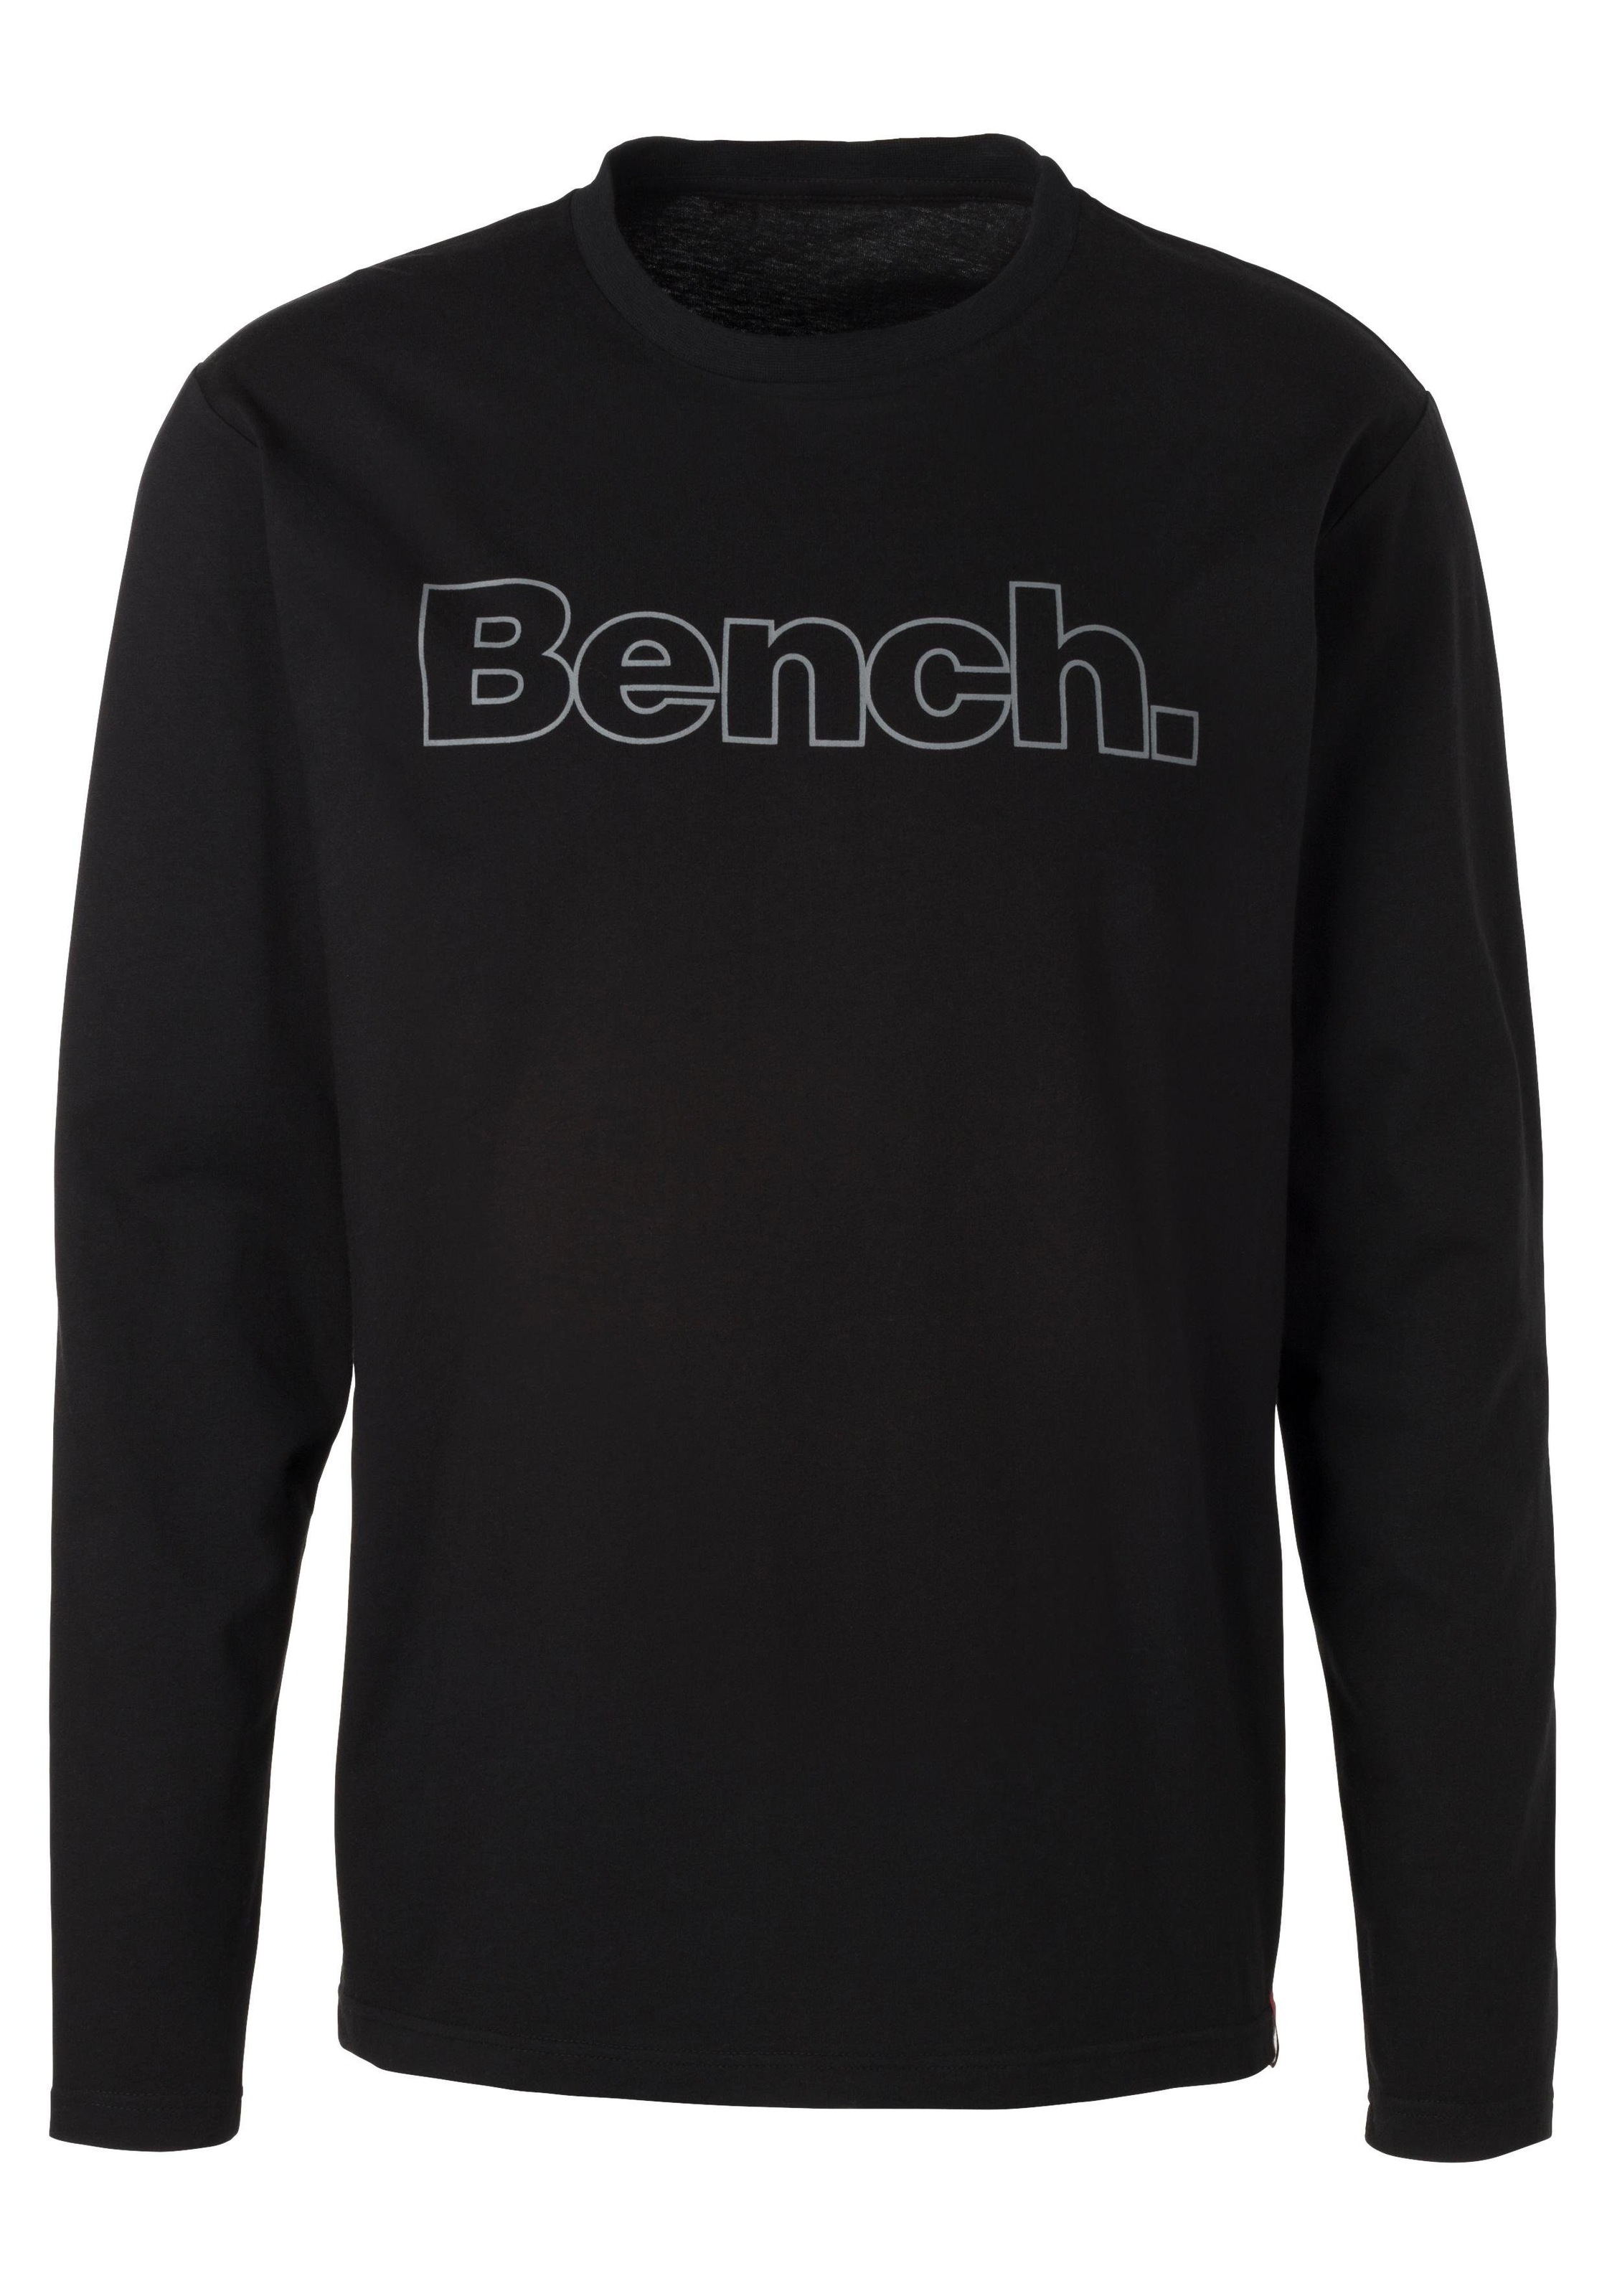 Bench. Loungewear Langarmshirt, (2 tlg.), mit Bench. Print vorn